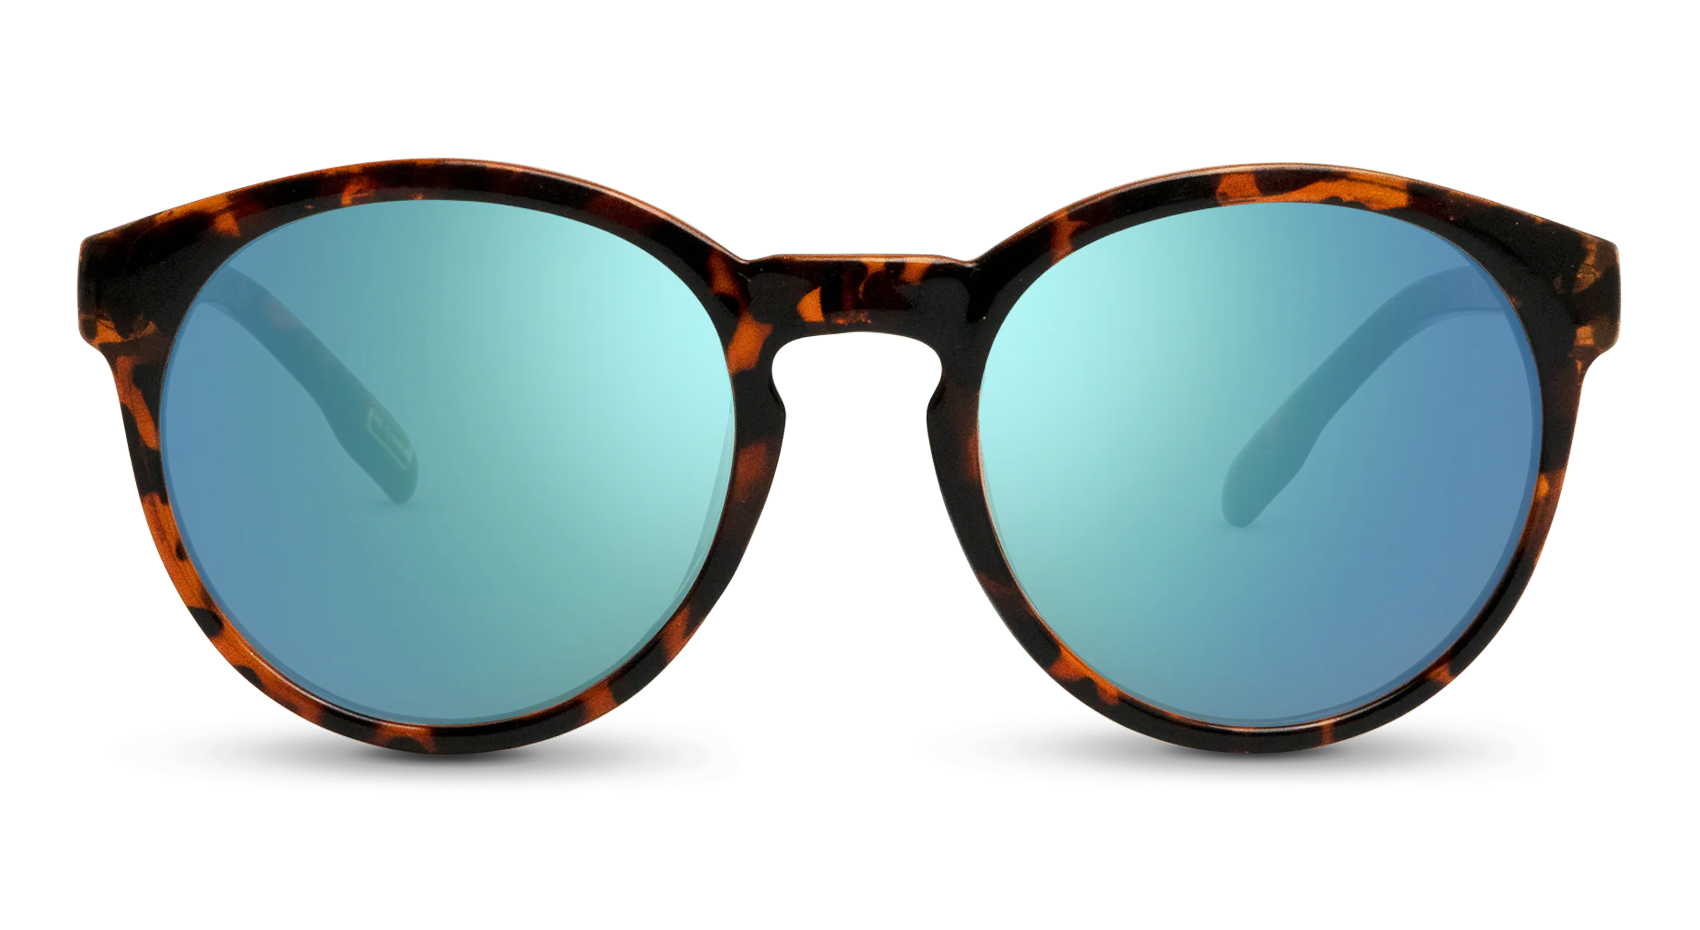 Penn Polarized Sunglasses - Nectar Brown Tortoise Frame / Orange Lens